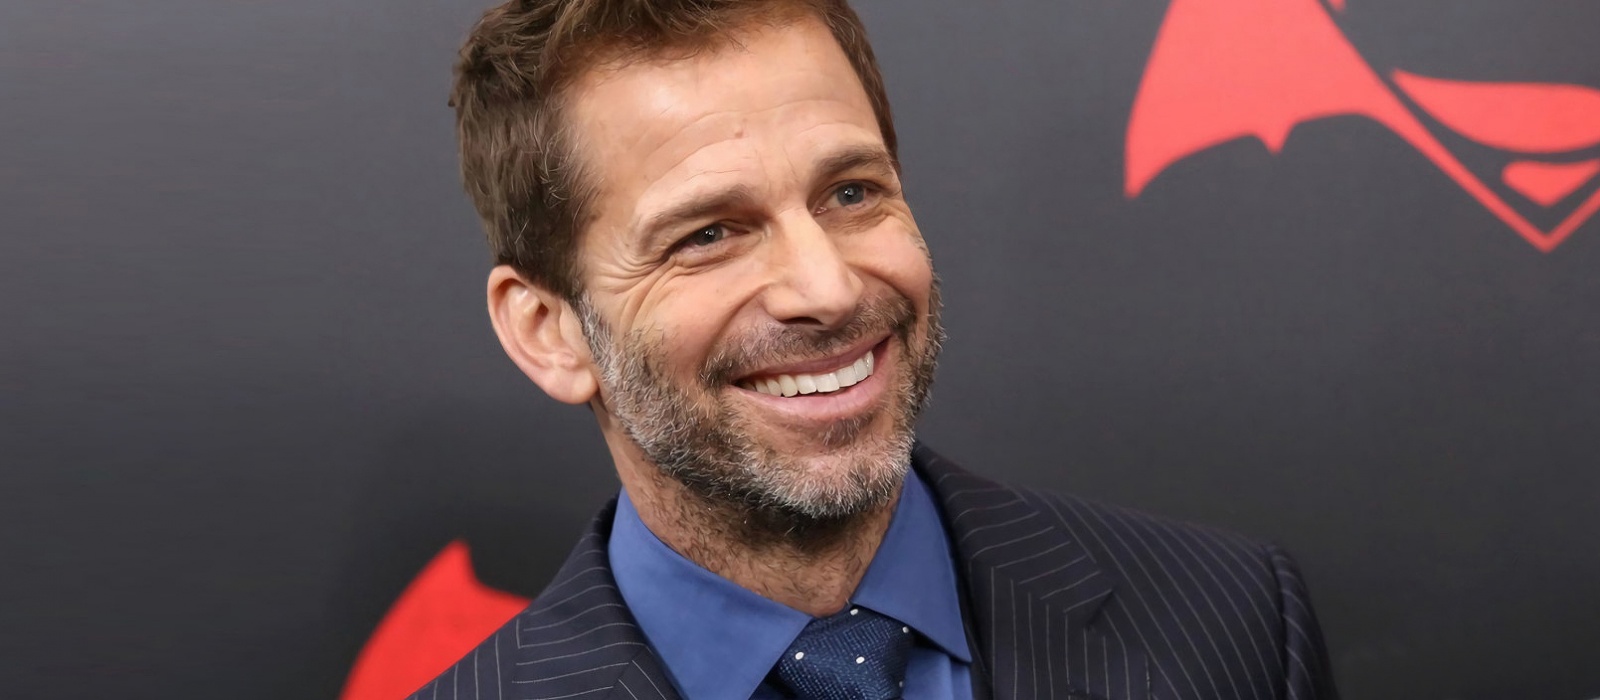 Zack Snyder otterrà il via libera per l'adattamento cinematografico di "Gears of War" dal creatore del gioco Cliff Blesinski, ma solo ad una condizione importante